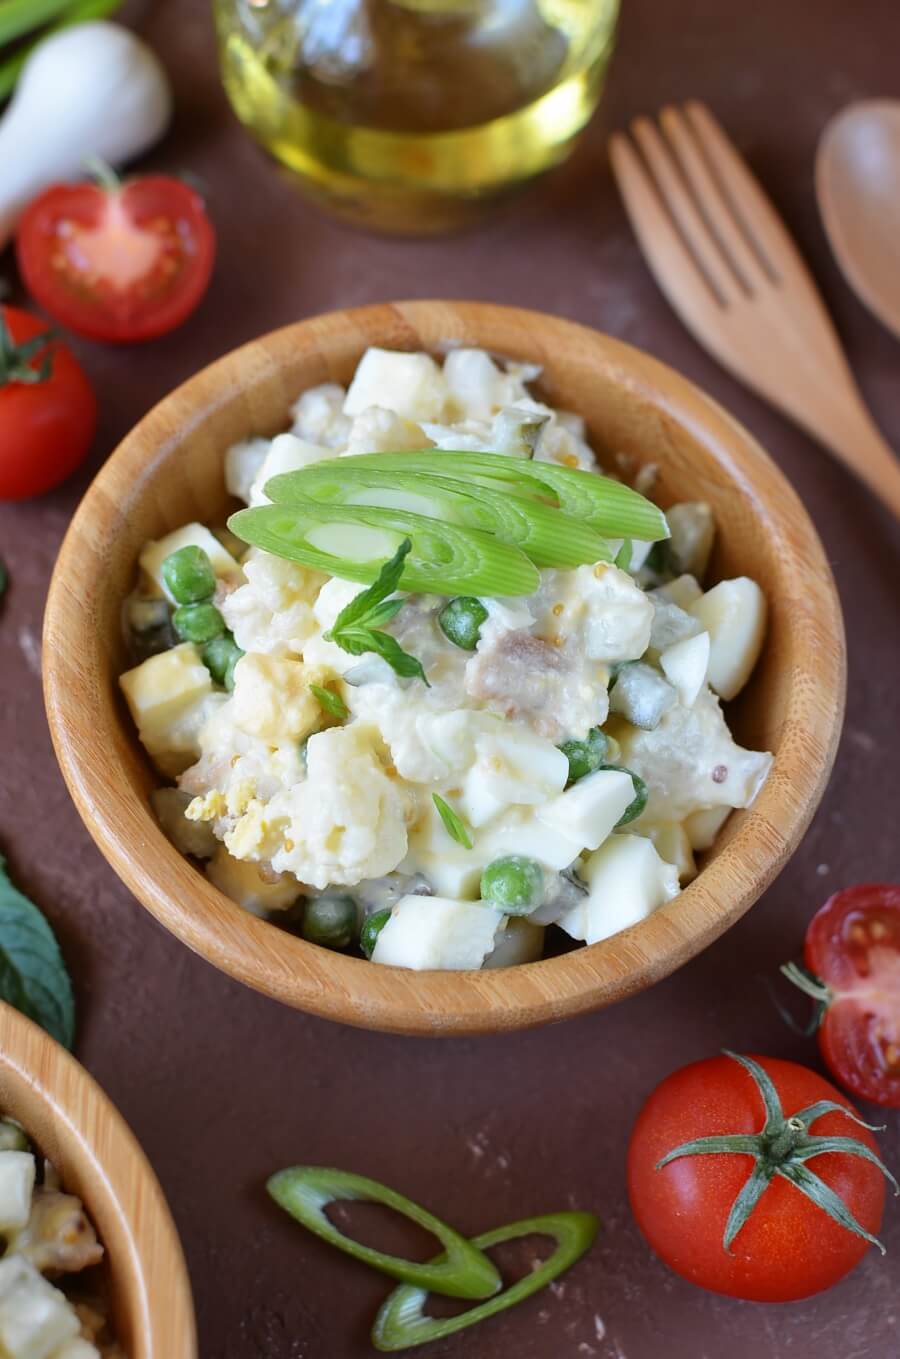 Keto Low Carb Cauliflower Salad Recipe - Cook.me Recipes